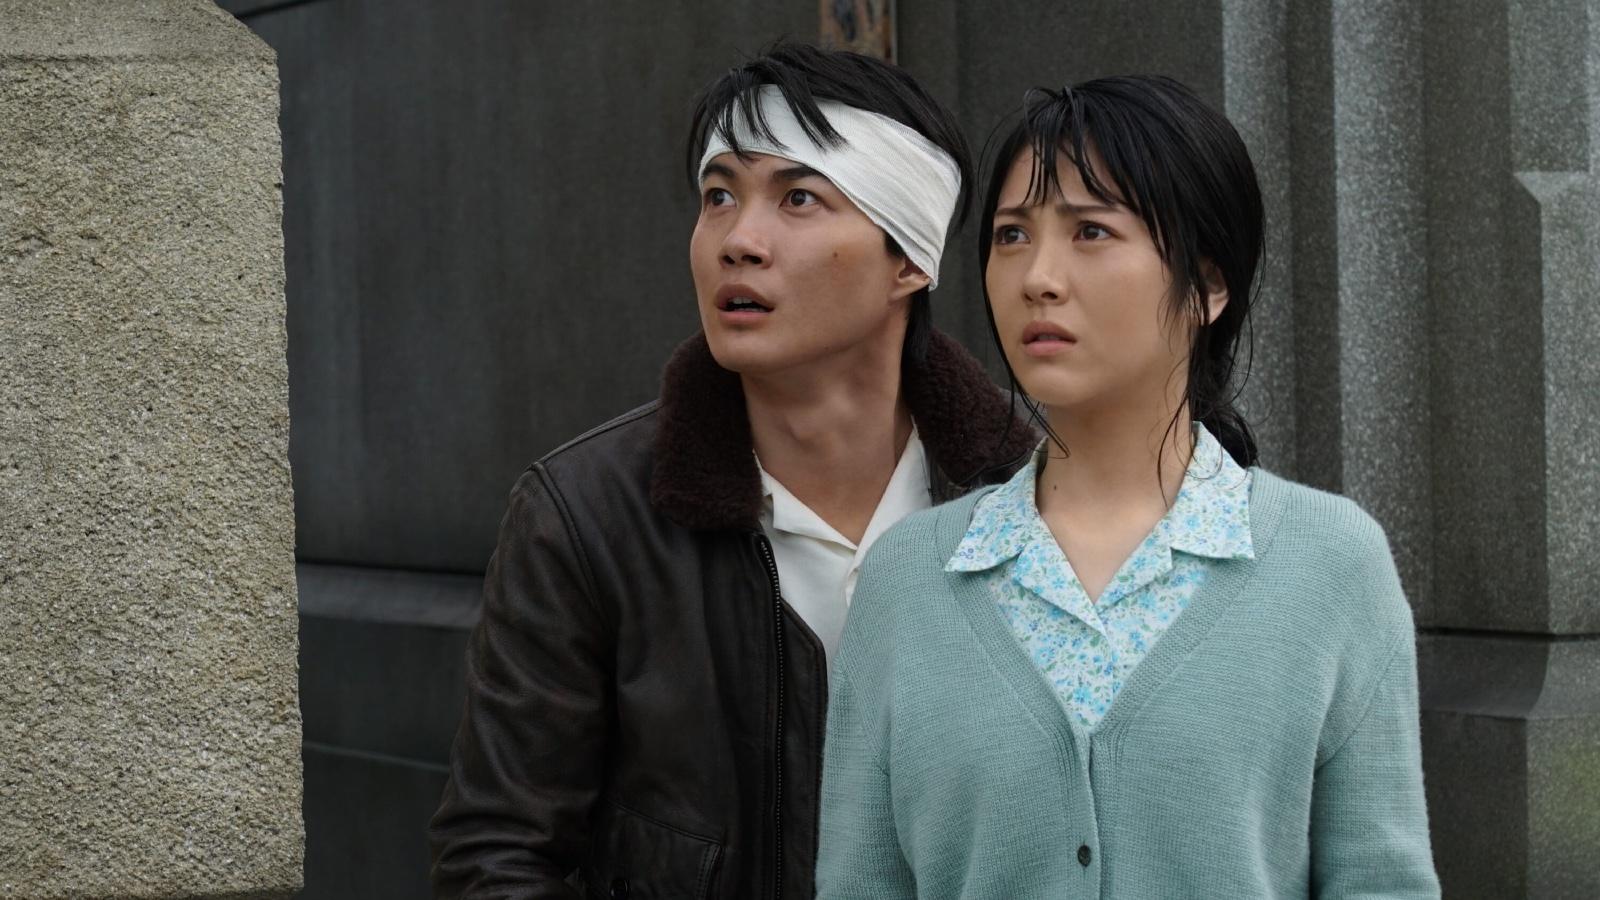 Koishi and Noriko in Godzilla Minus One